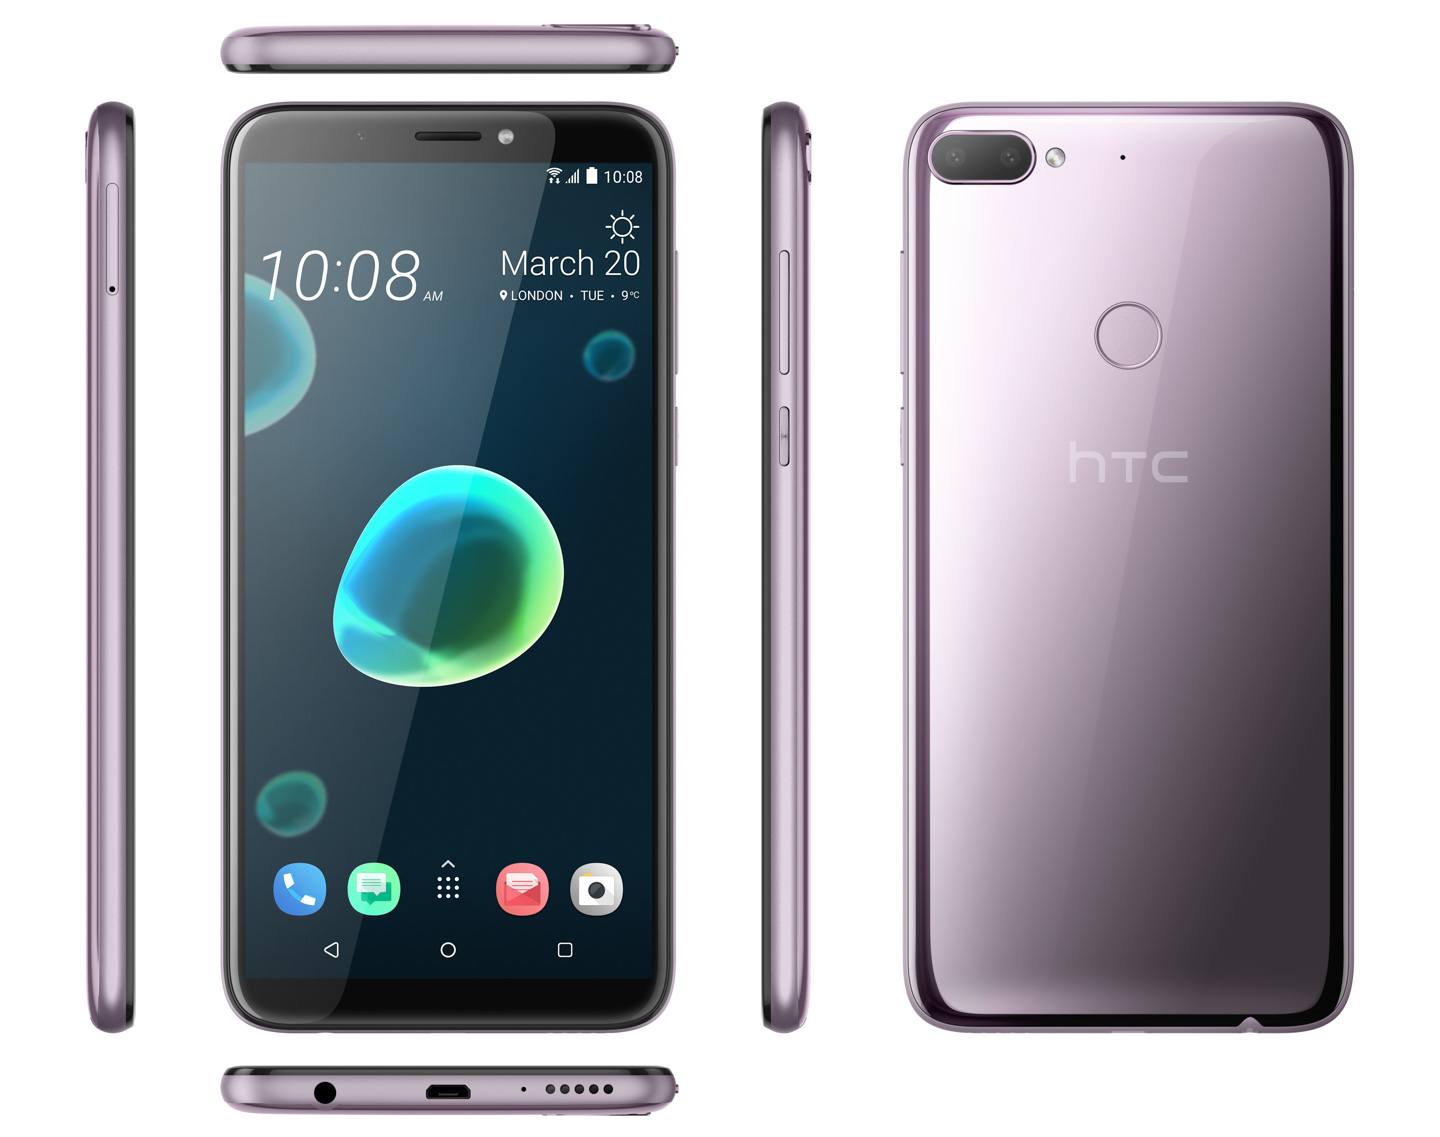 HTC ra mắt mẫu
smartphone tầm trung Desire 12 plus tại Việt Nam với giá chỉ
5 triệu đồng